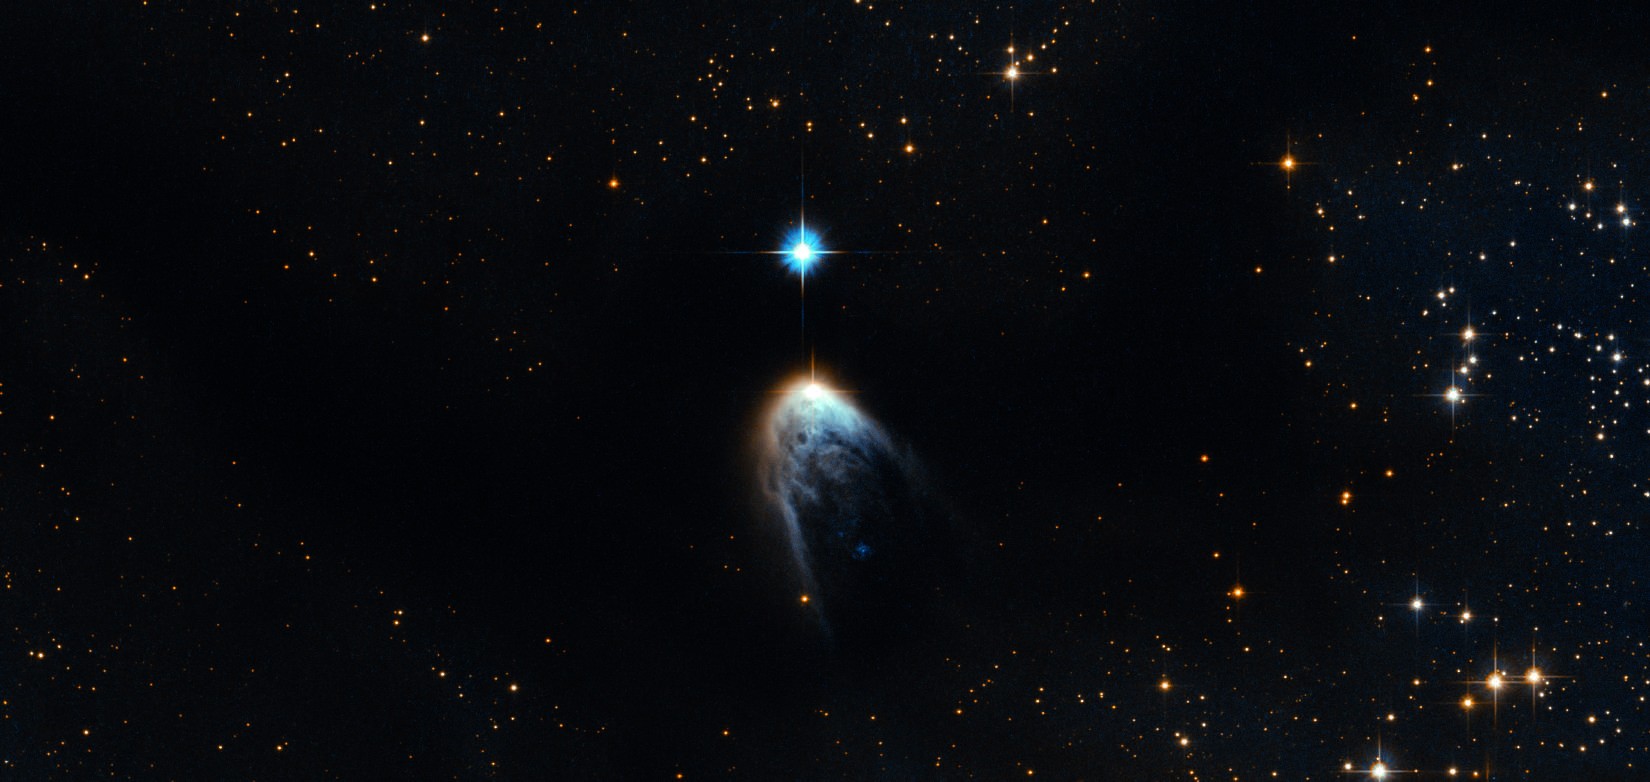 Jovens estrelas em névoa de gás e poeira cósmicas (Foto: ESA/Hubble)